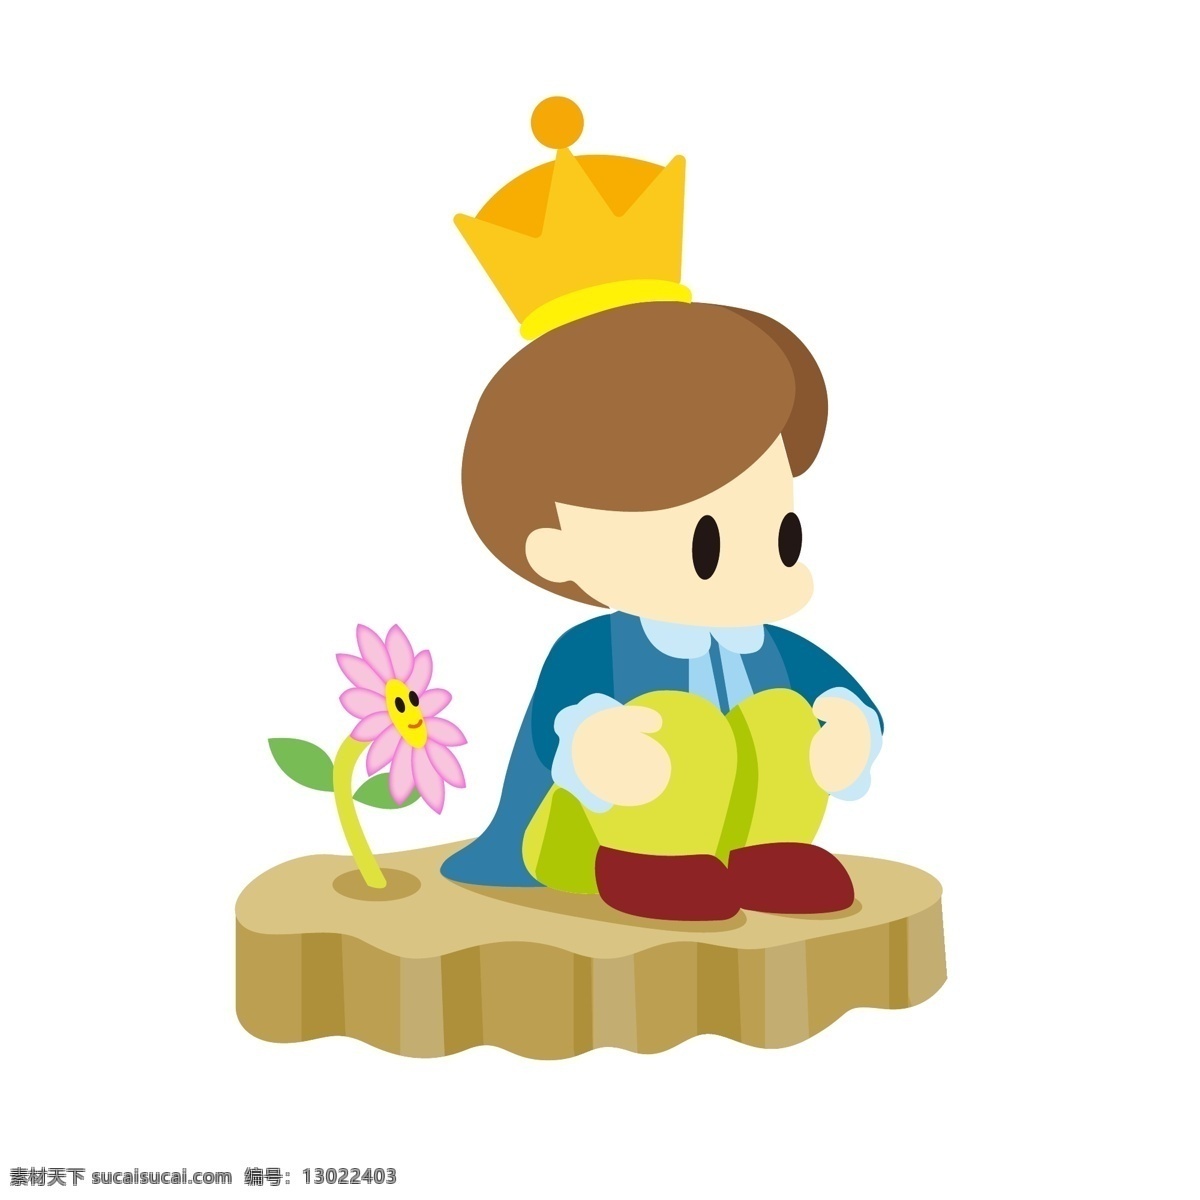 外国 西方 王子 可爱 卡通 商用 小花